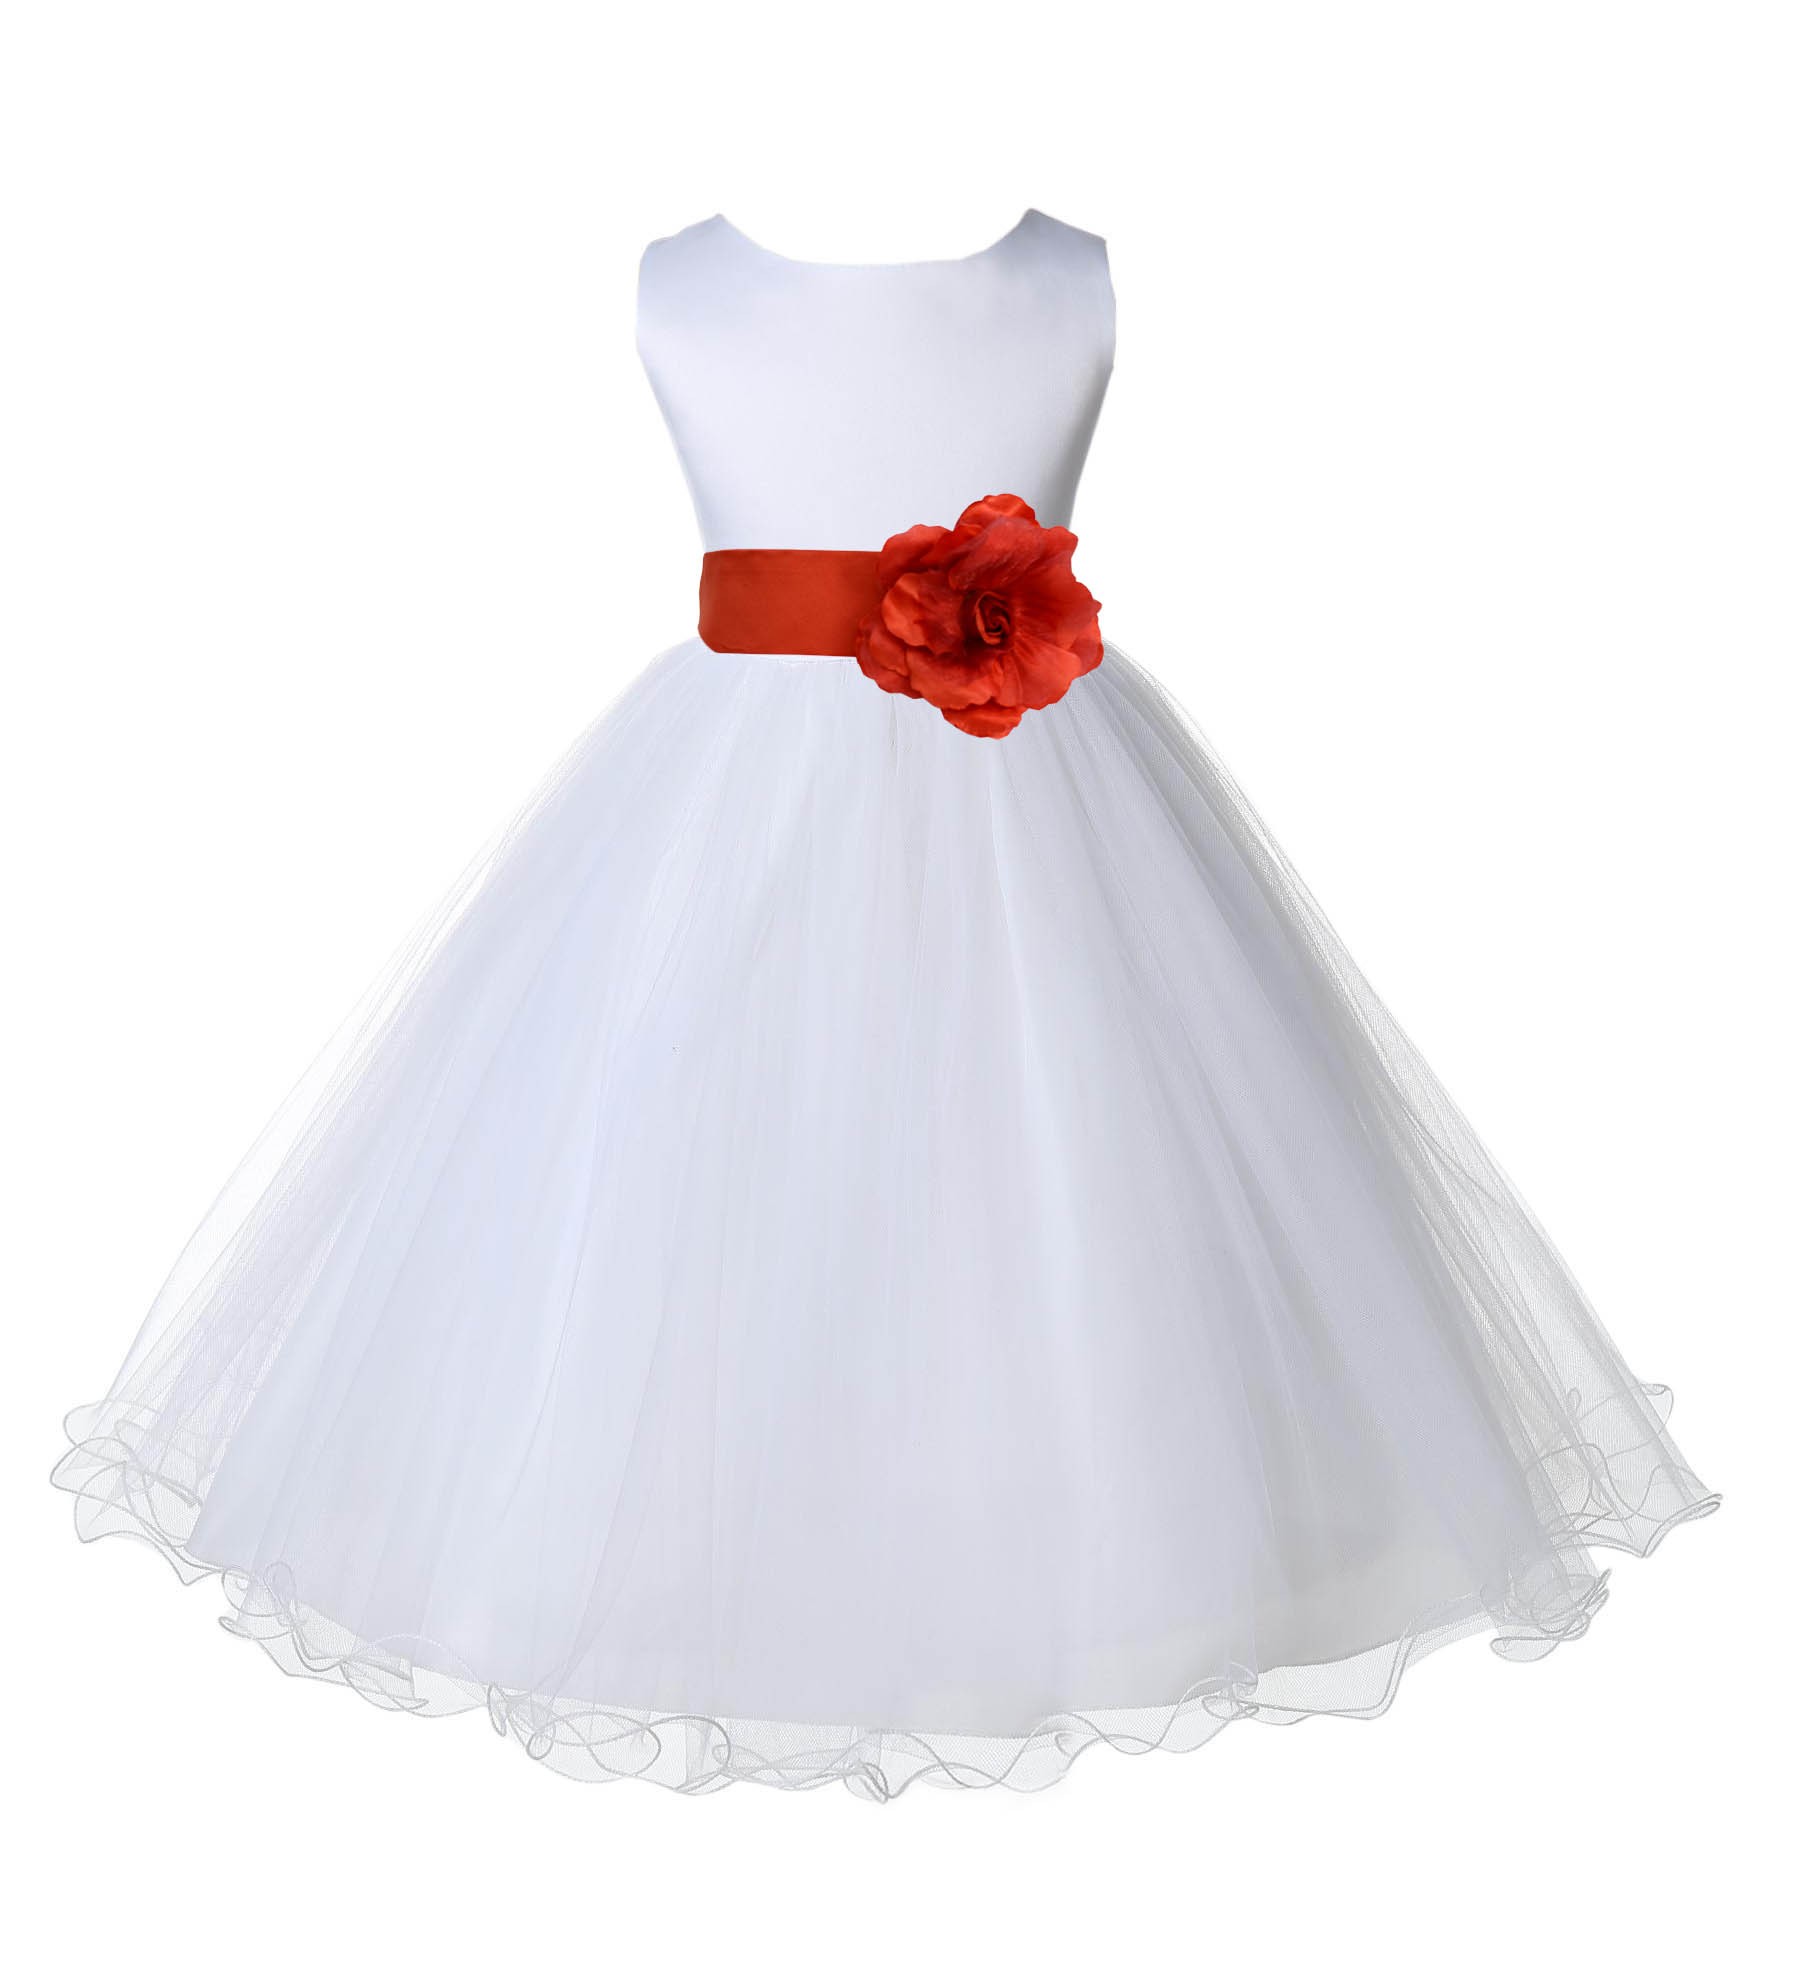 White/Persimmon Tulle Rattail Edge Flower Girl Dress Wedding Bridal 829S